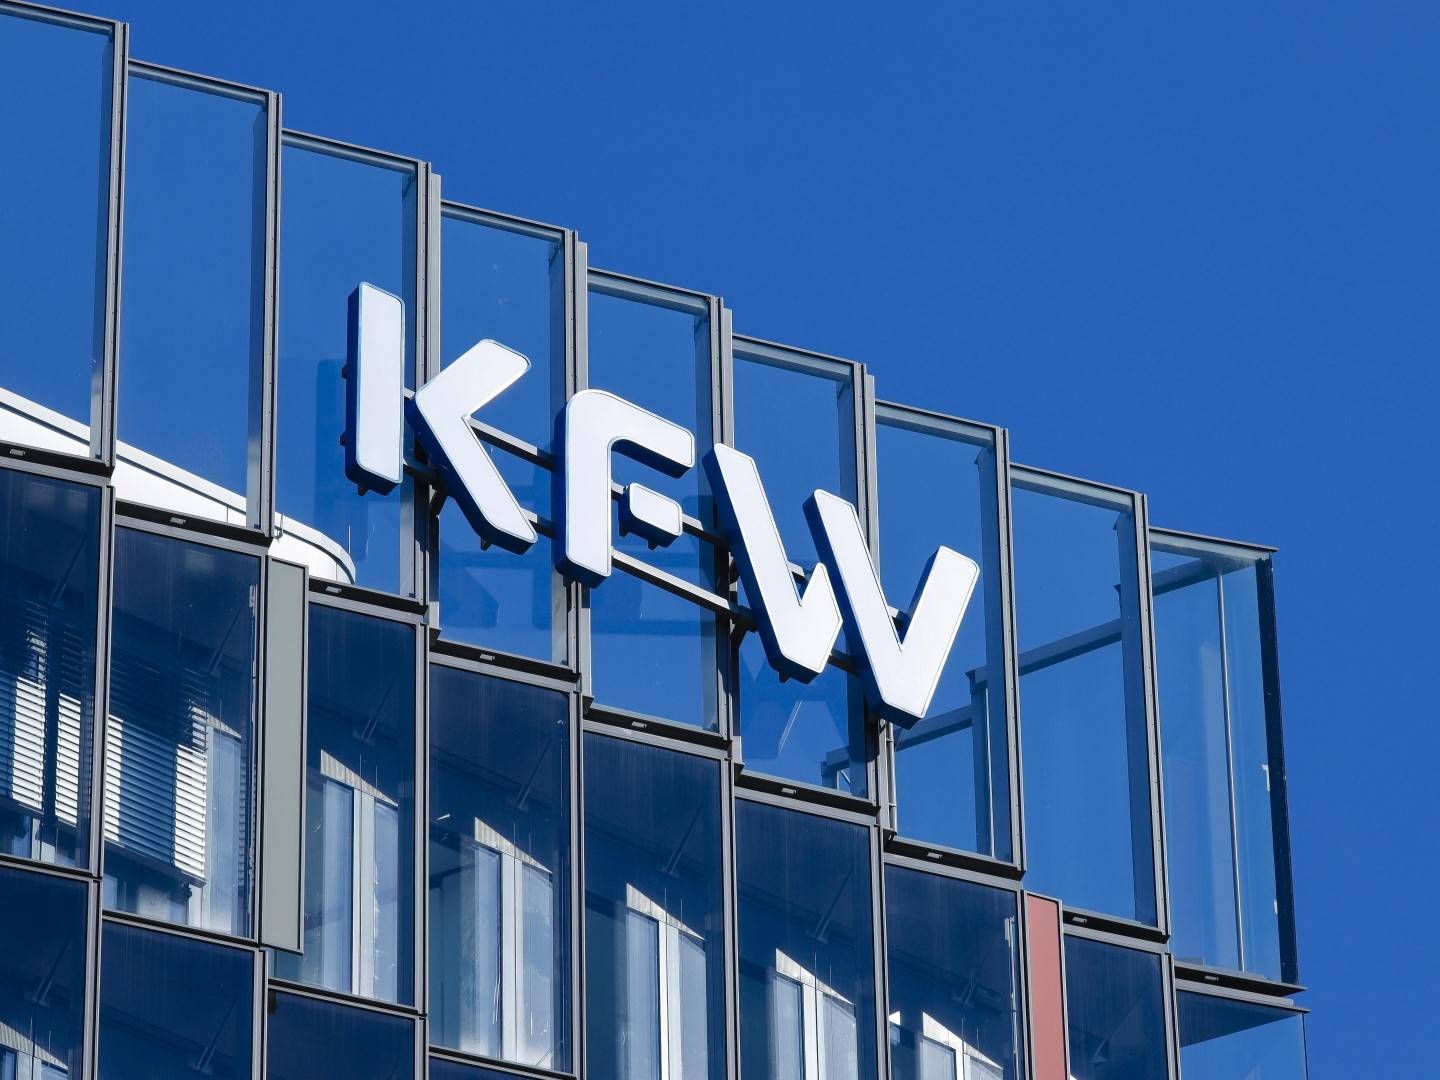 Fassade der KfW in Frankfurt am Main | Foto: picture alliance / imageBROKER | Rupert Oberhäuser